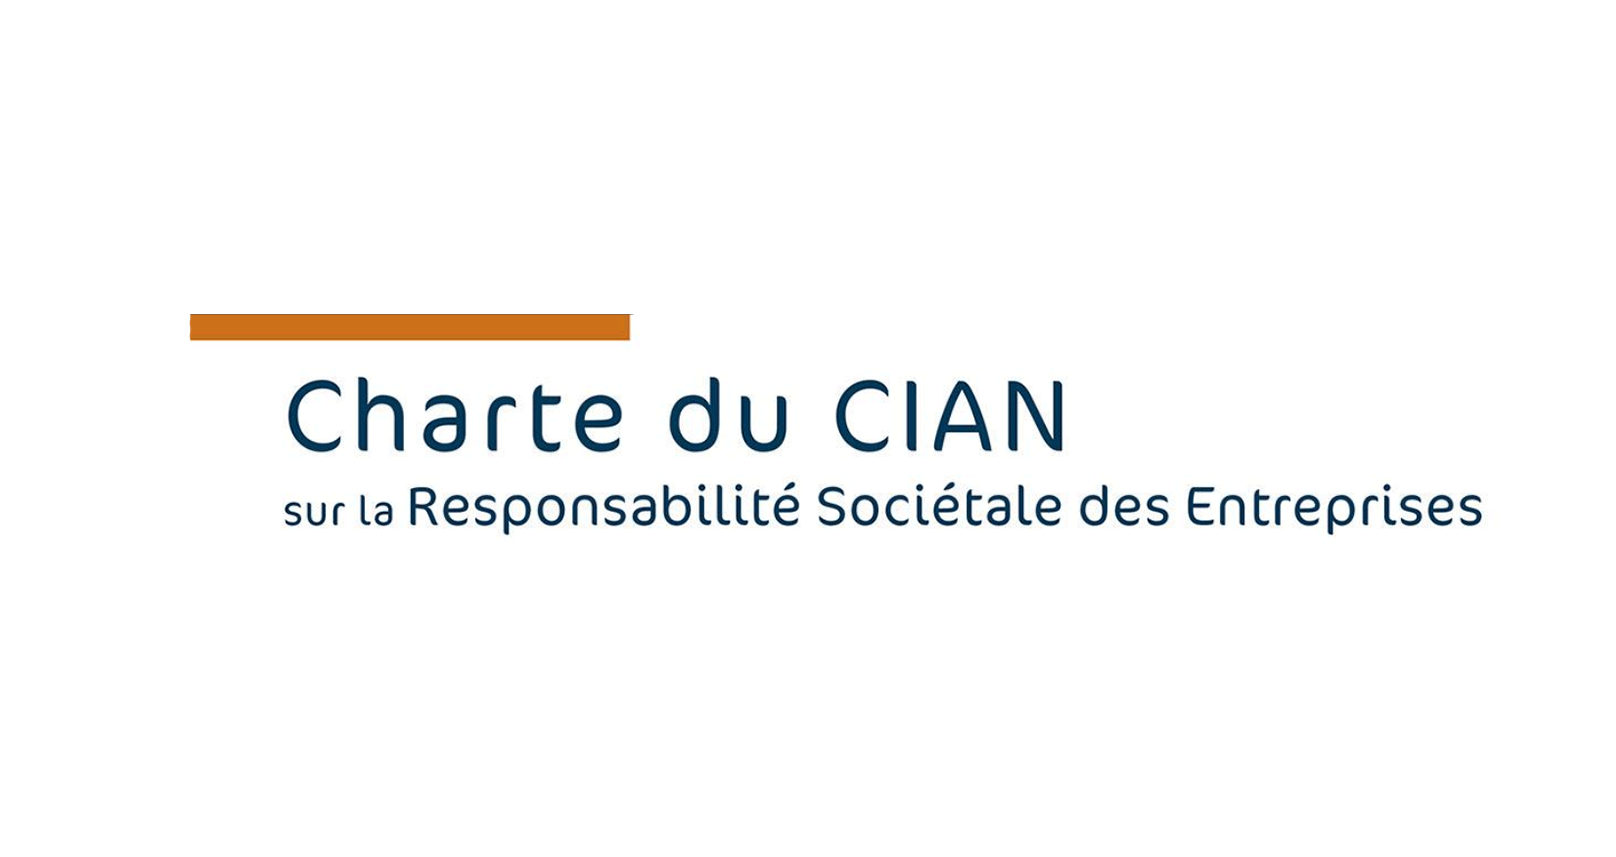 Le CIAN se dote d’une nouvelle Charte sur la Responsabilité Sociétale des Entreprises